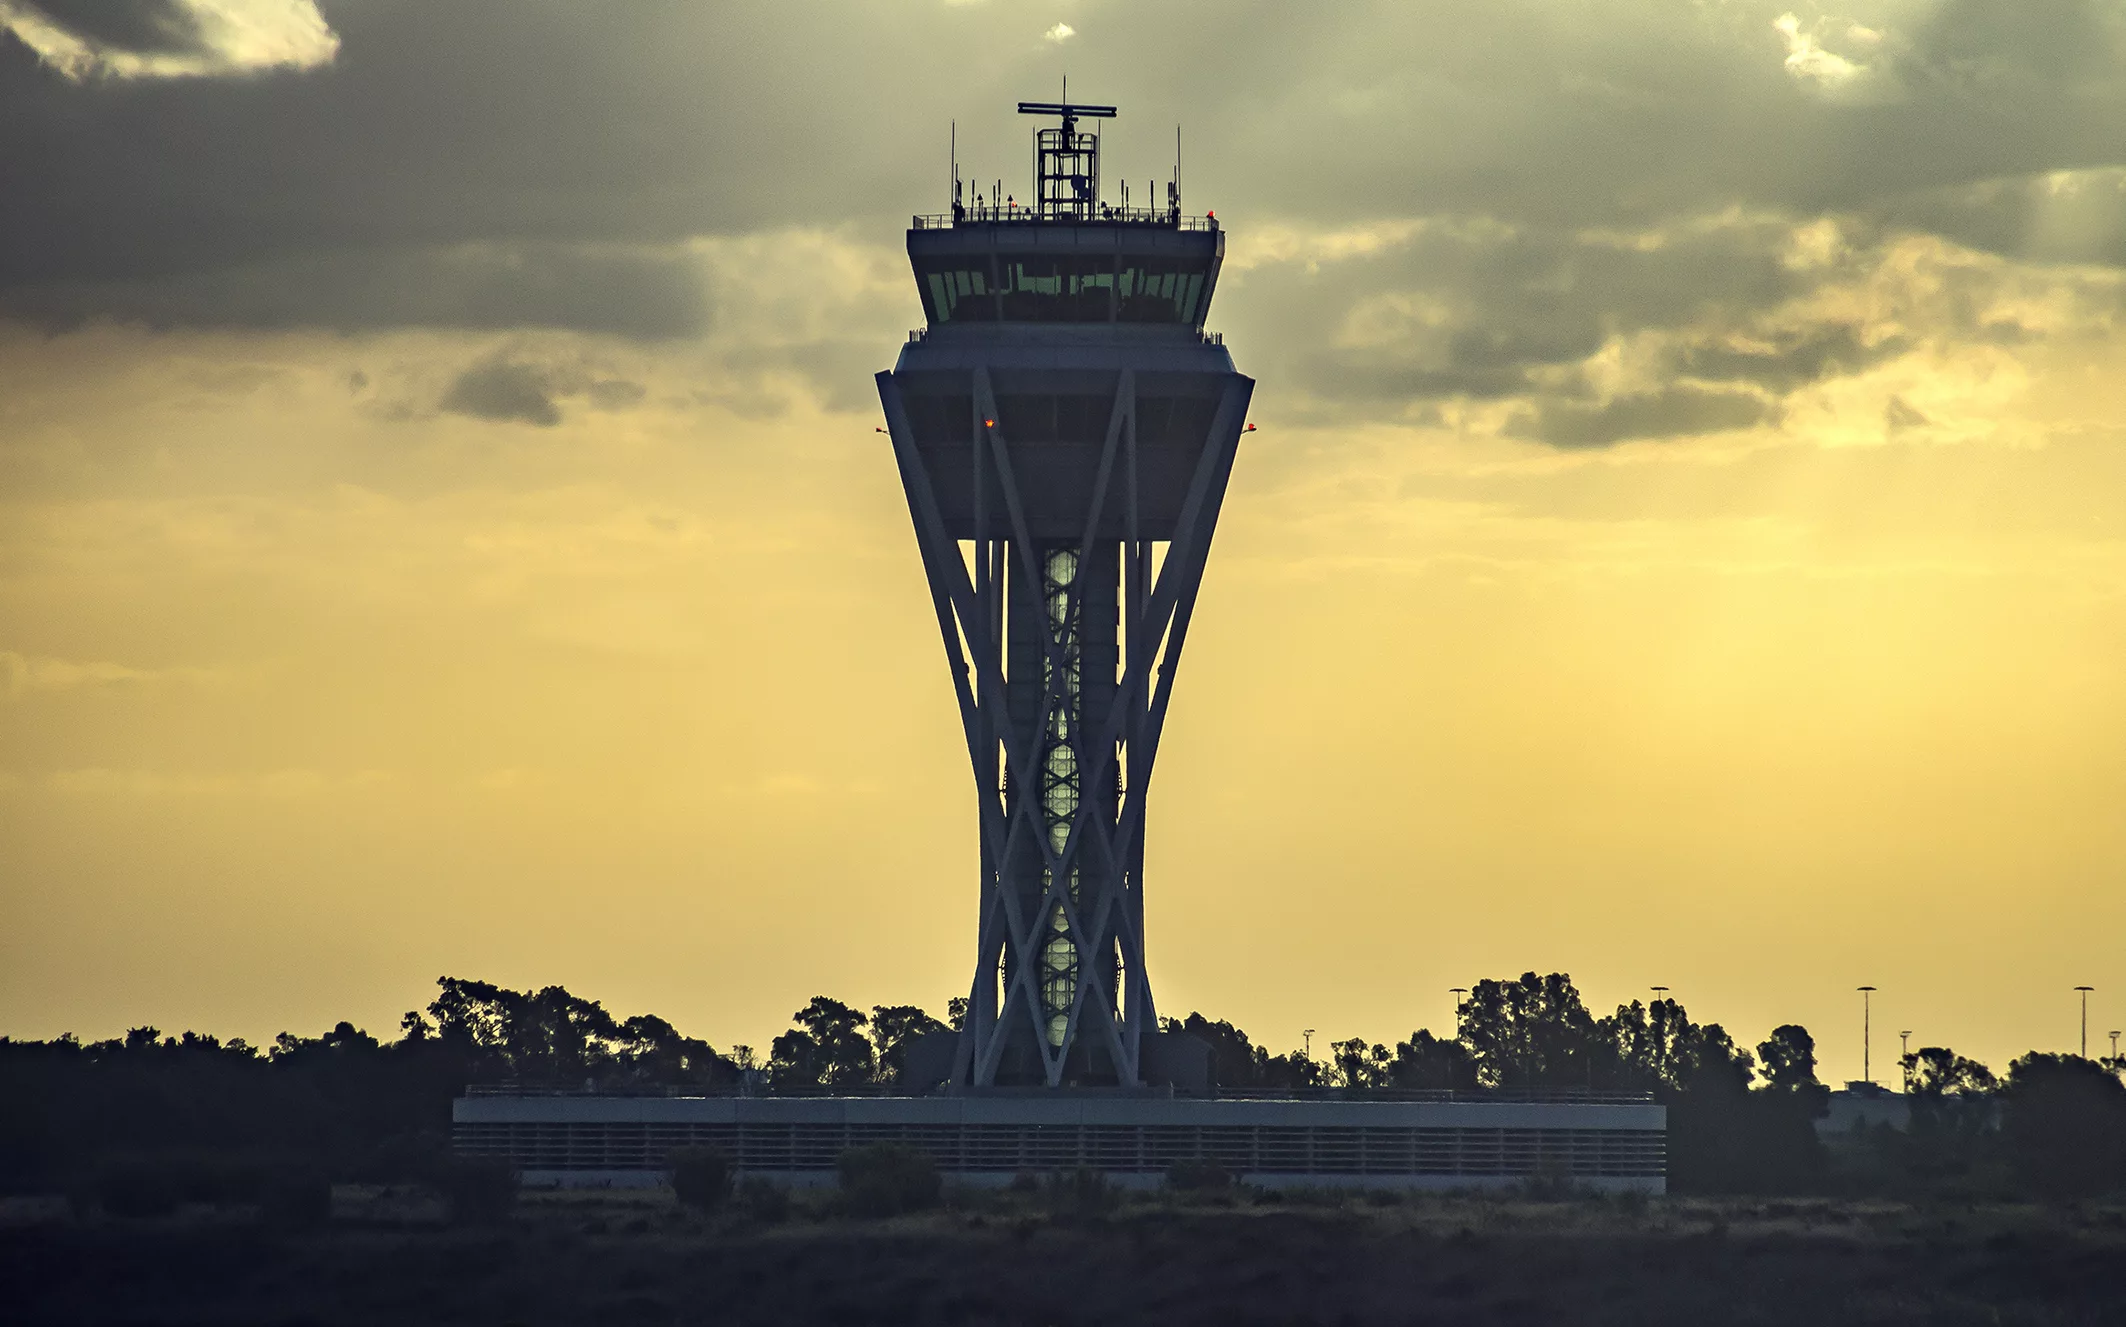 Del futur intercanviador de La Sagrera a l’Aeroport de Barcelona: aquests són els projectes prioritaris pendents a les infraestructures de Catalunya